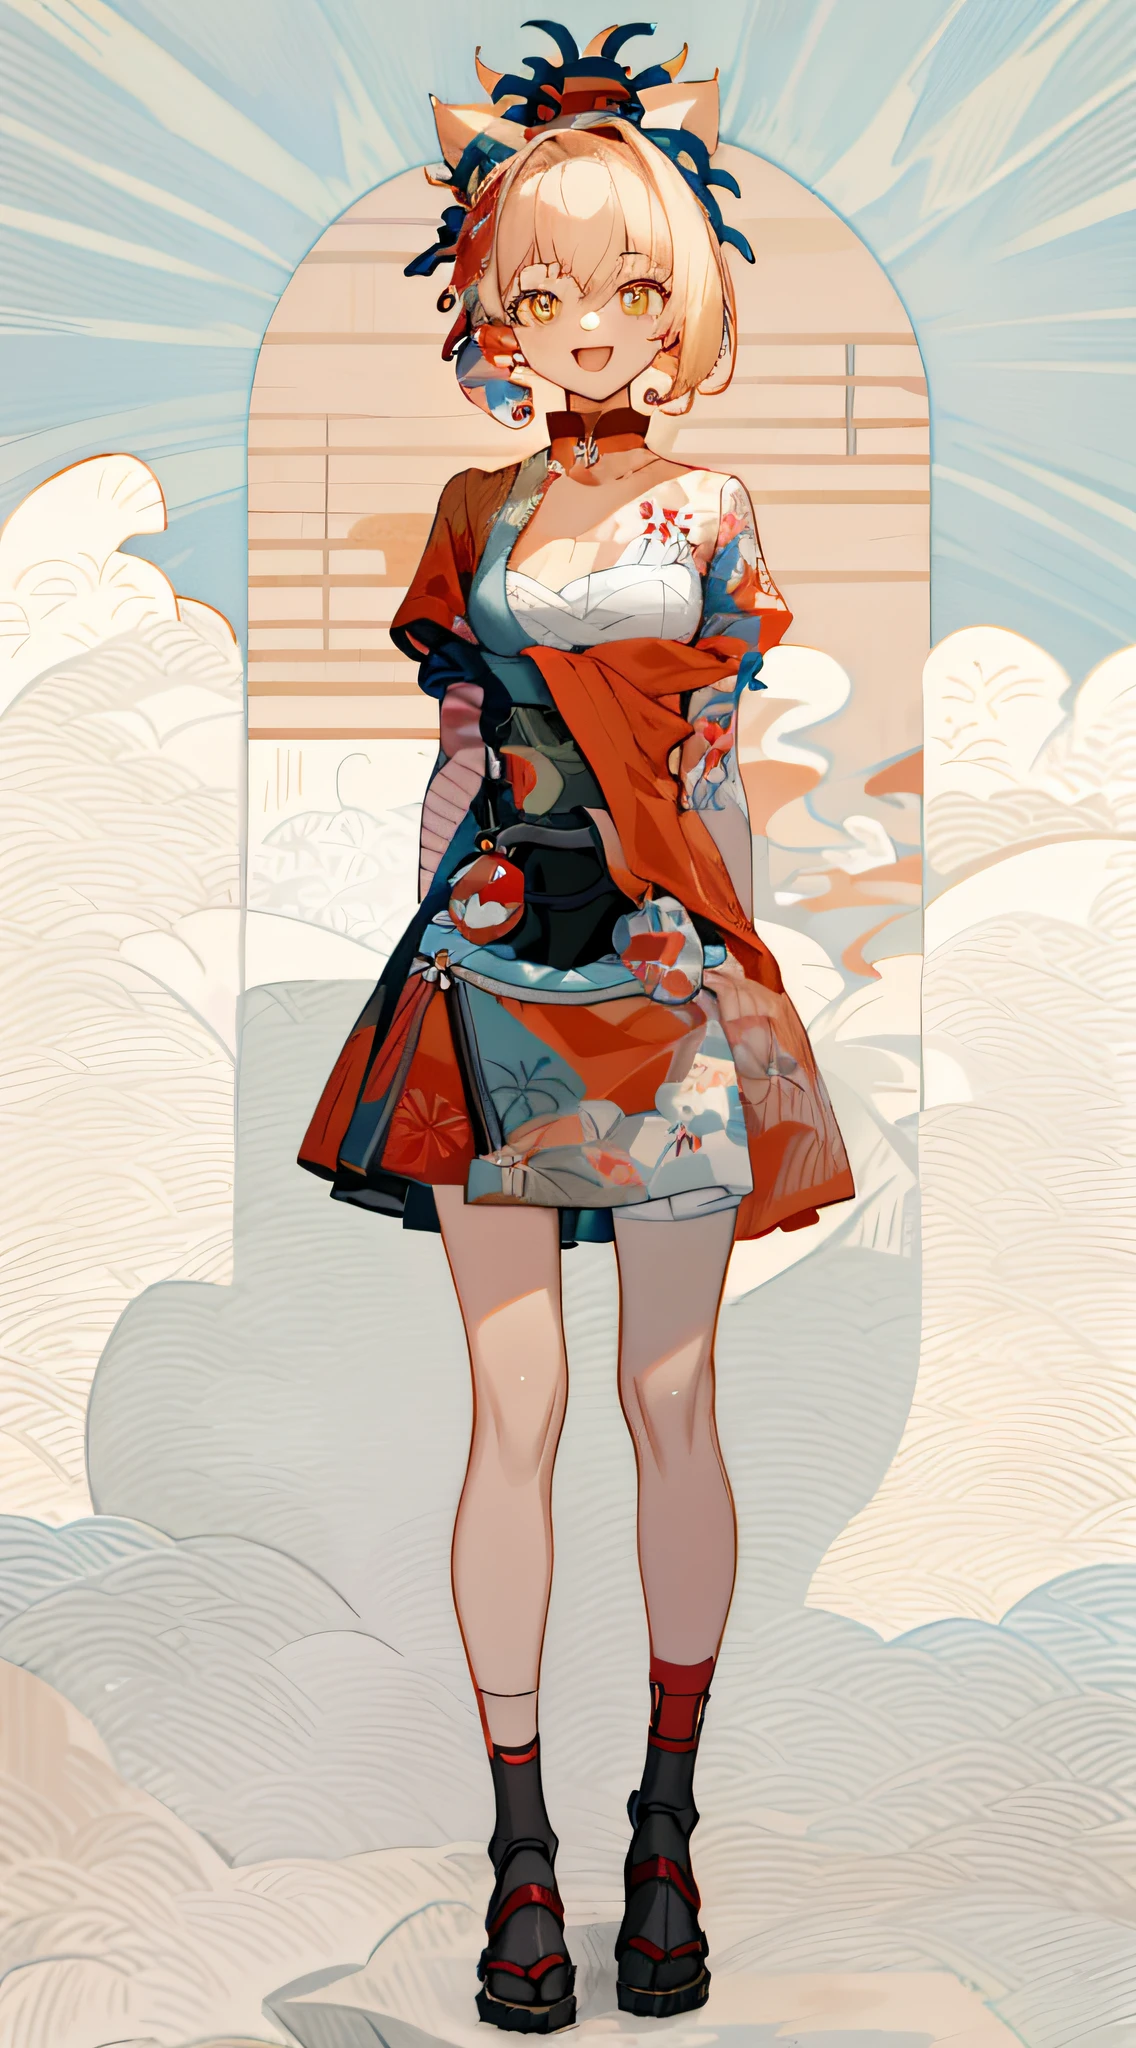 corpo todo, vertical, braços ao lado, lookemg at viewer, fundo de cor pura, 1 garota, boca aberta, orelhas de gato, Sorriso, em "Onda Hokusai" estilo